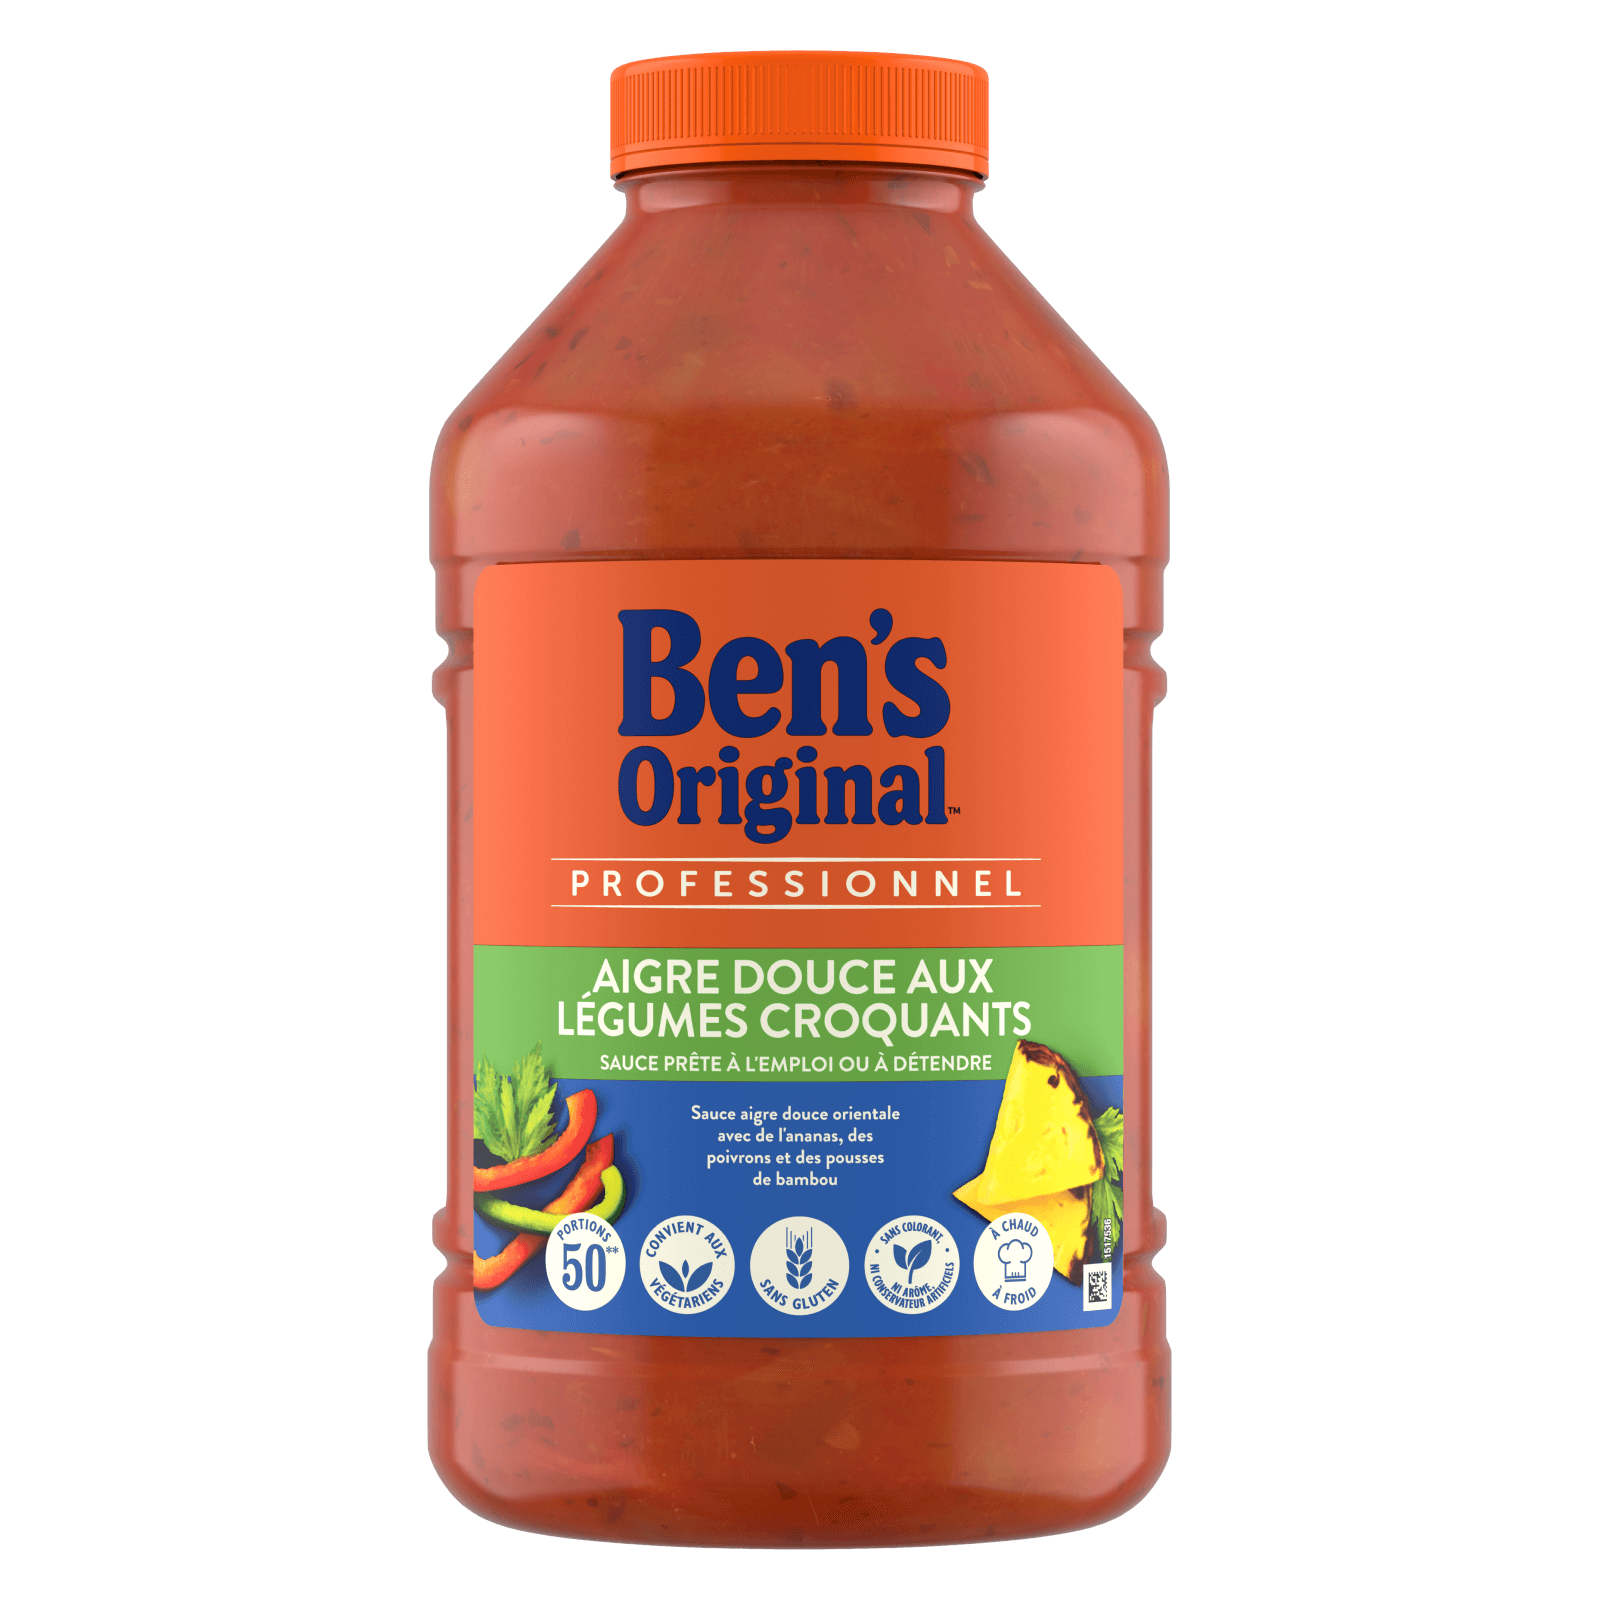 Ben's Original Sauce aigre douce aux légumes croquants